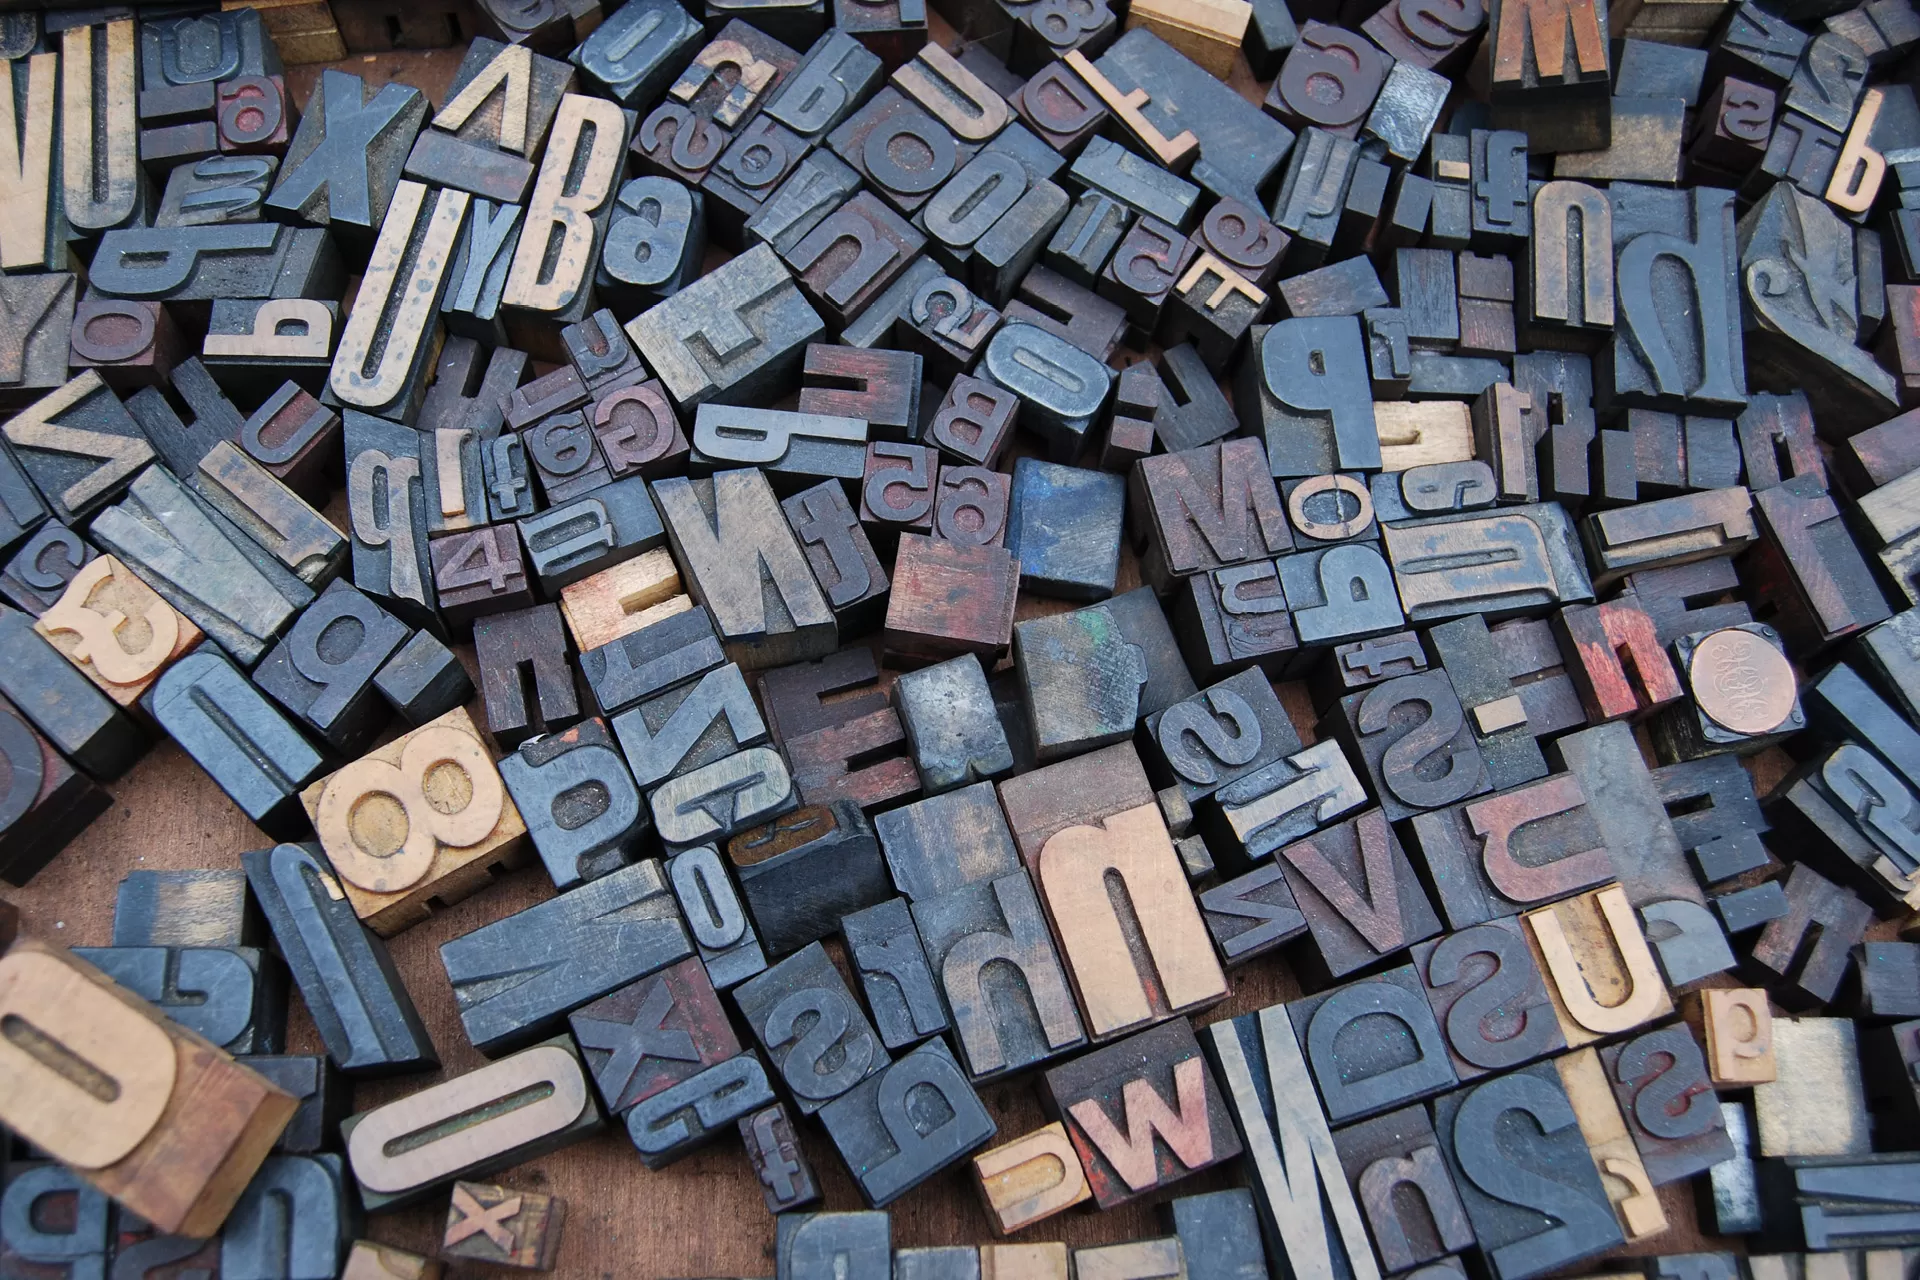 Holzdruckbuchstaben in unterschiedlichen Grössen liegen auf einem Tisch. Sie werden für Letterpress oder Buchdruck benötigt.